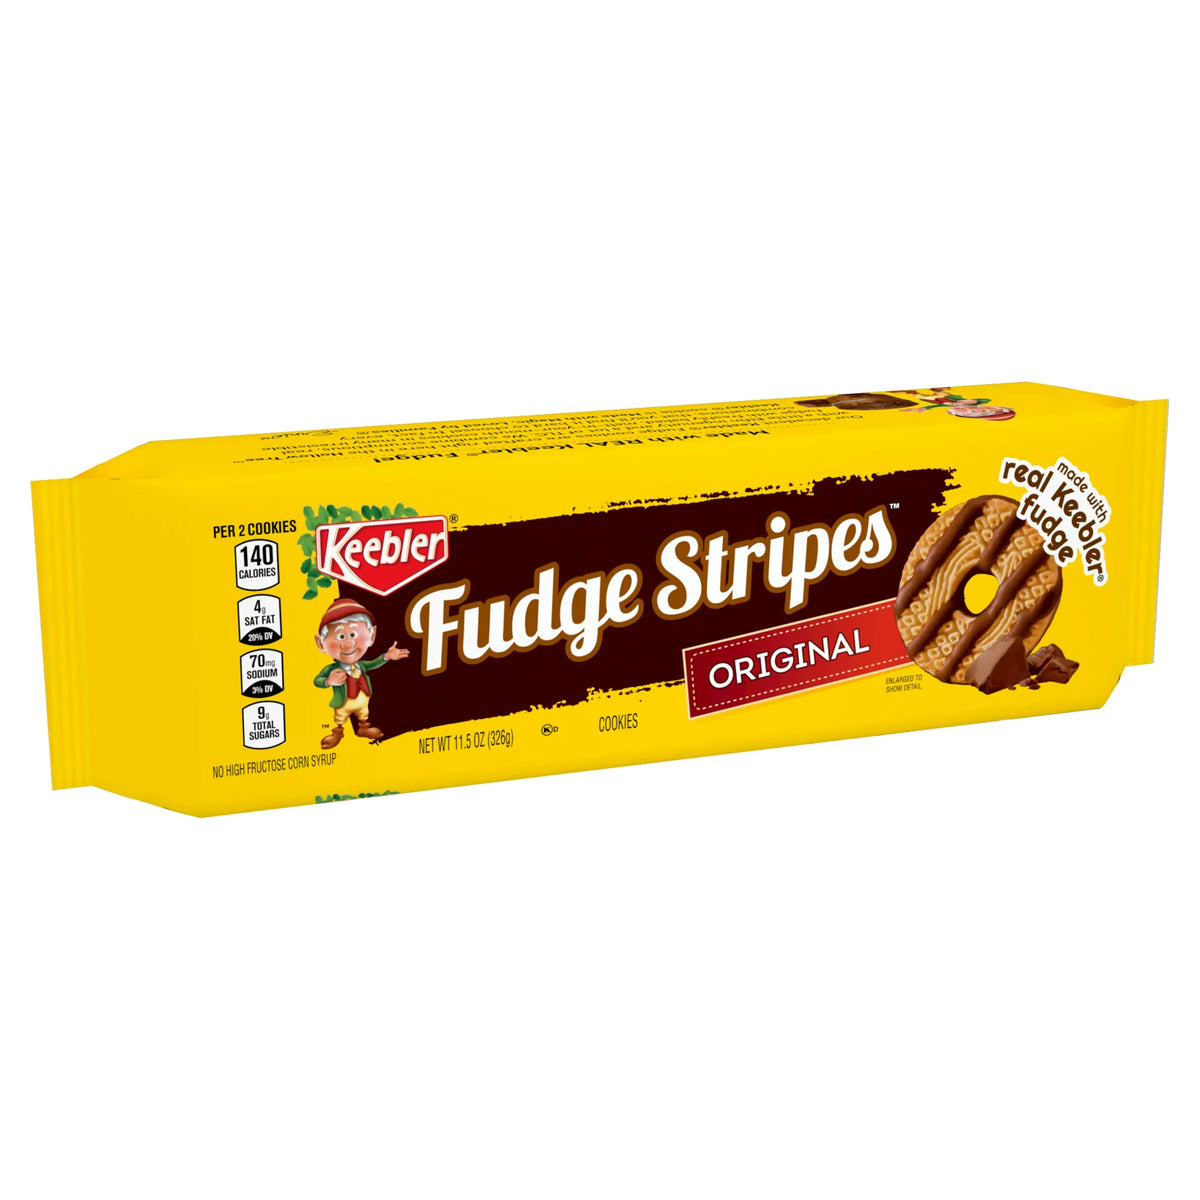 Keebler Fudge Stripes Original Cookies, 11.5 oz Package